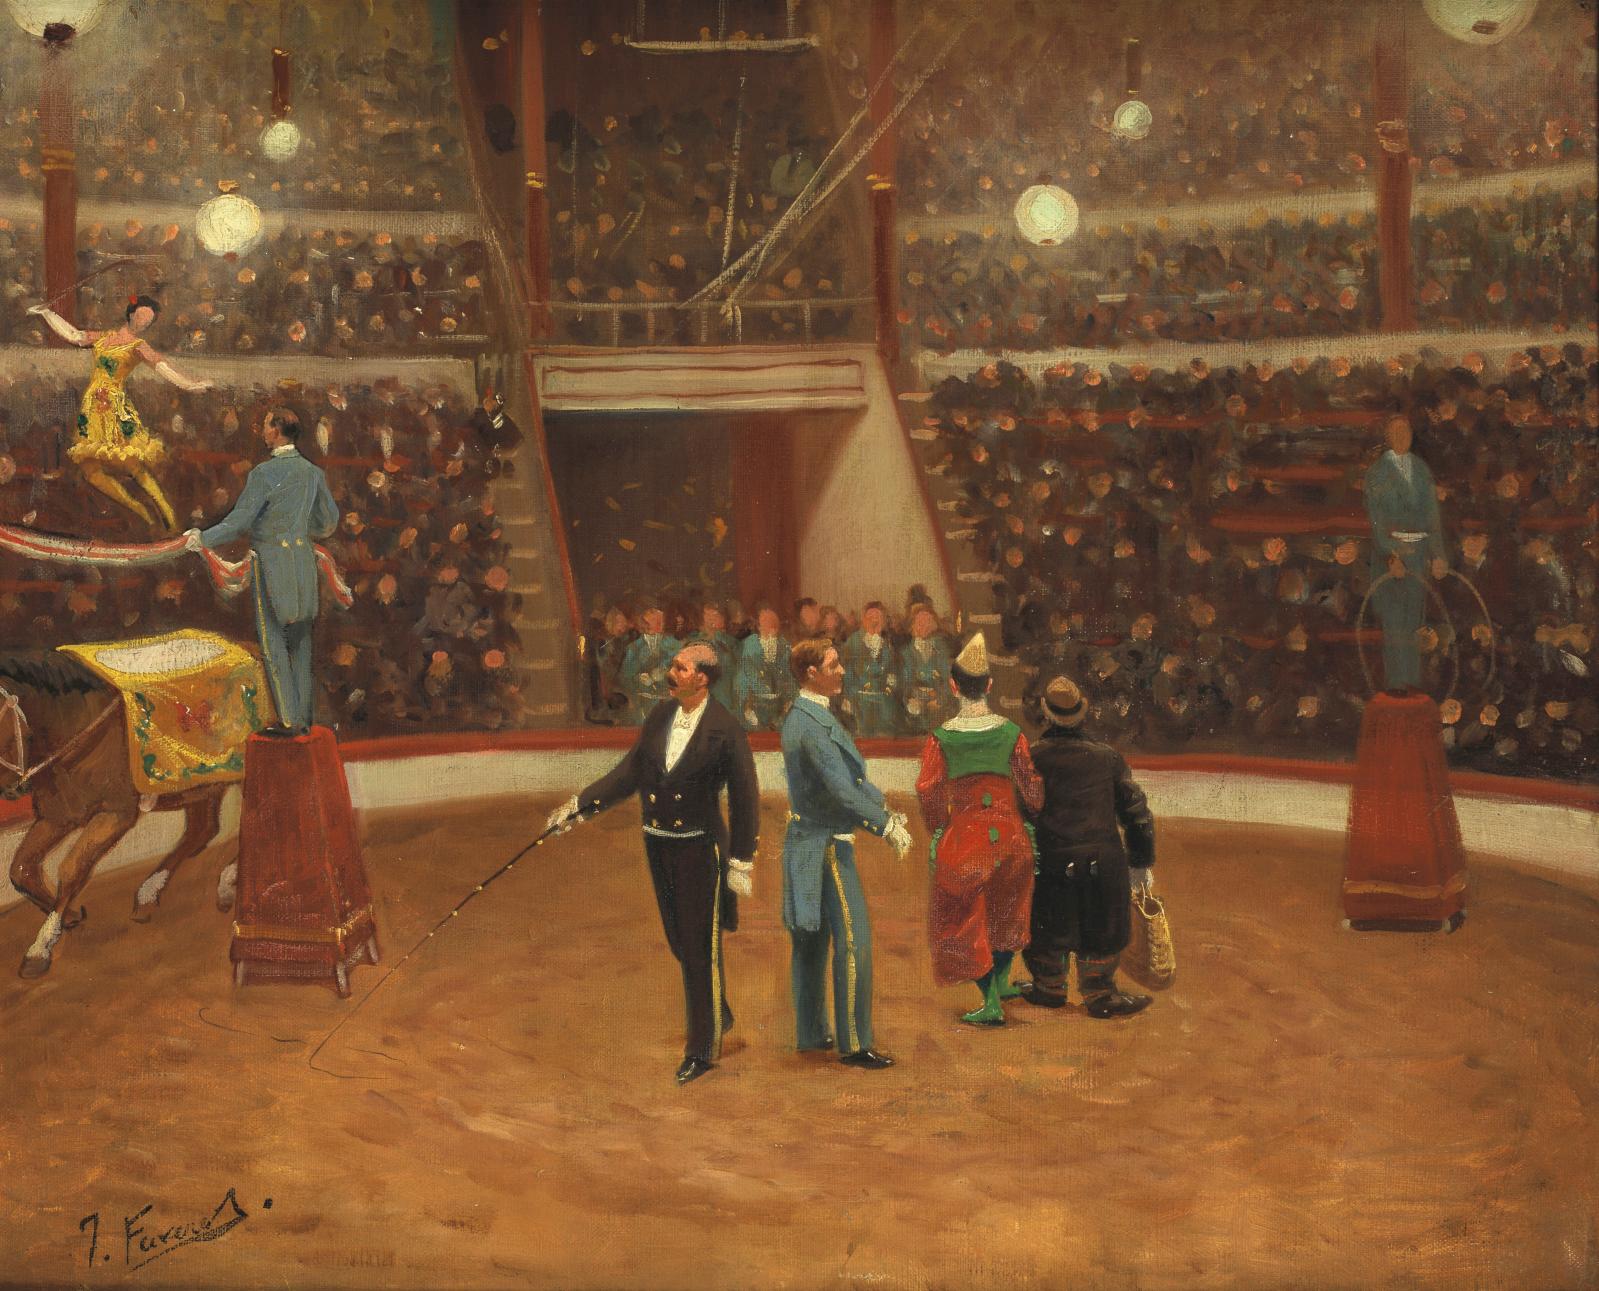 Joseph Faverot (1862-1918), Écuyères et clowns au cirque Medrano, huile sur toile, vers 1900, collection J. Y. et G. Borg. Photo : Yohann 